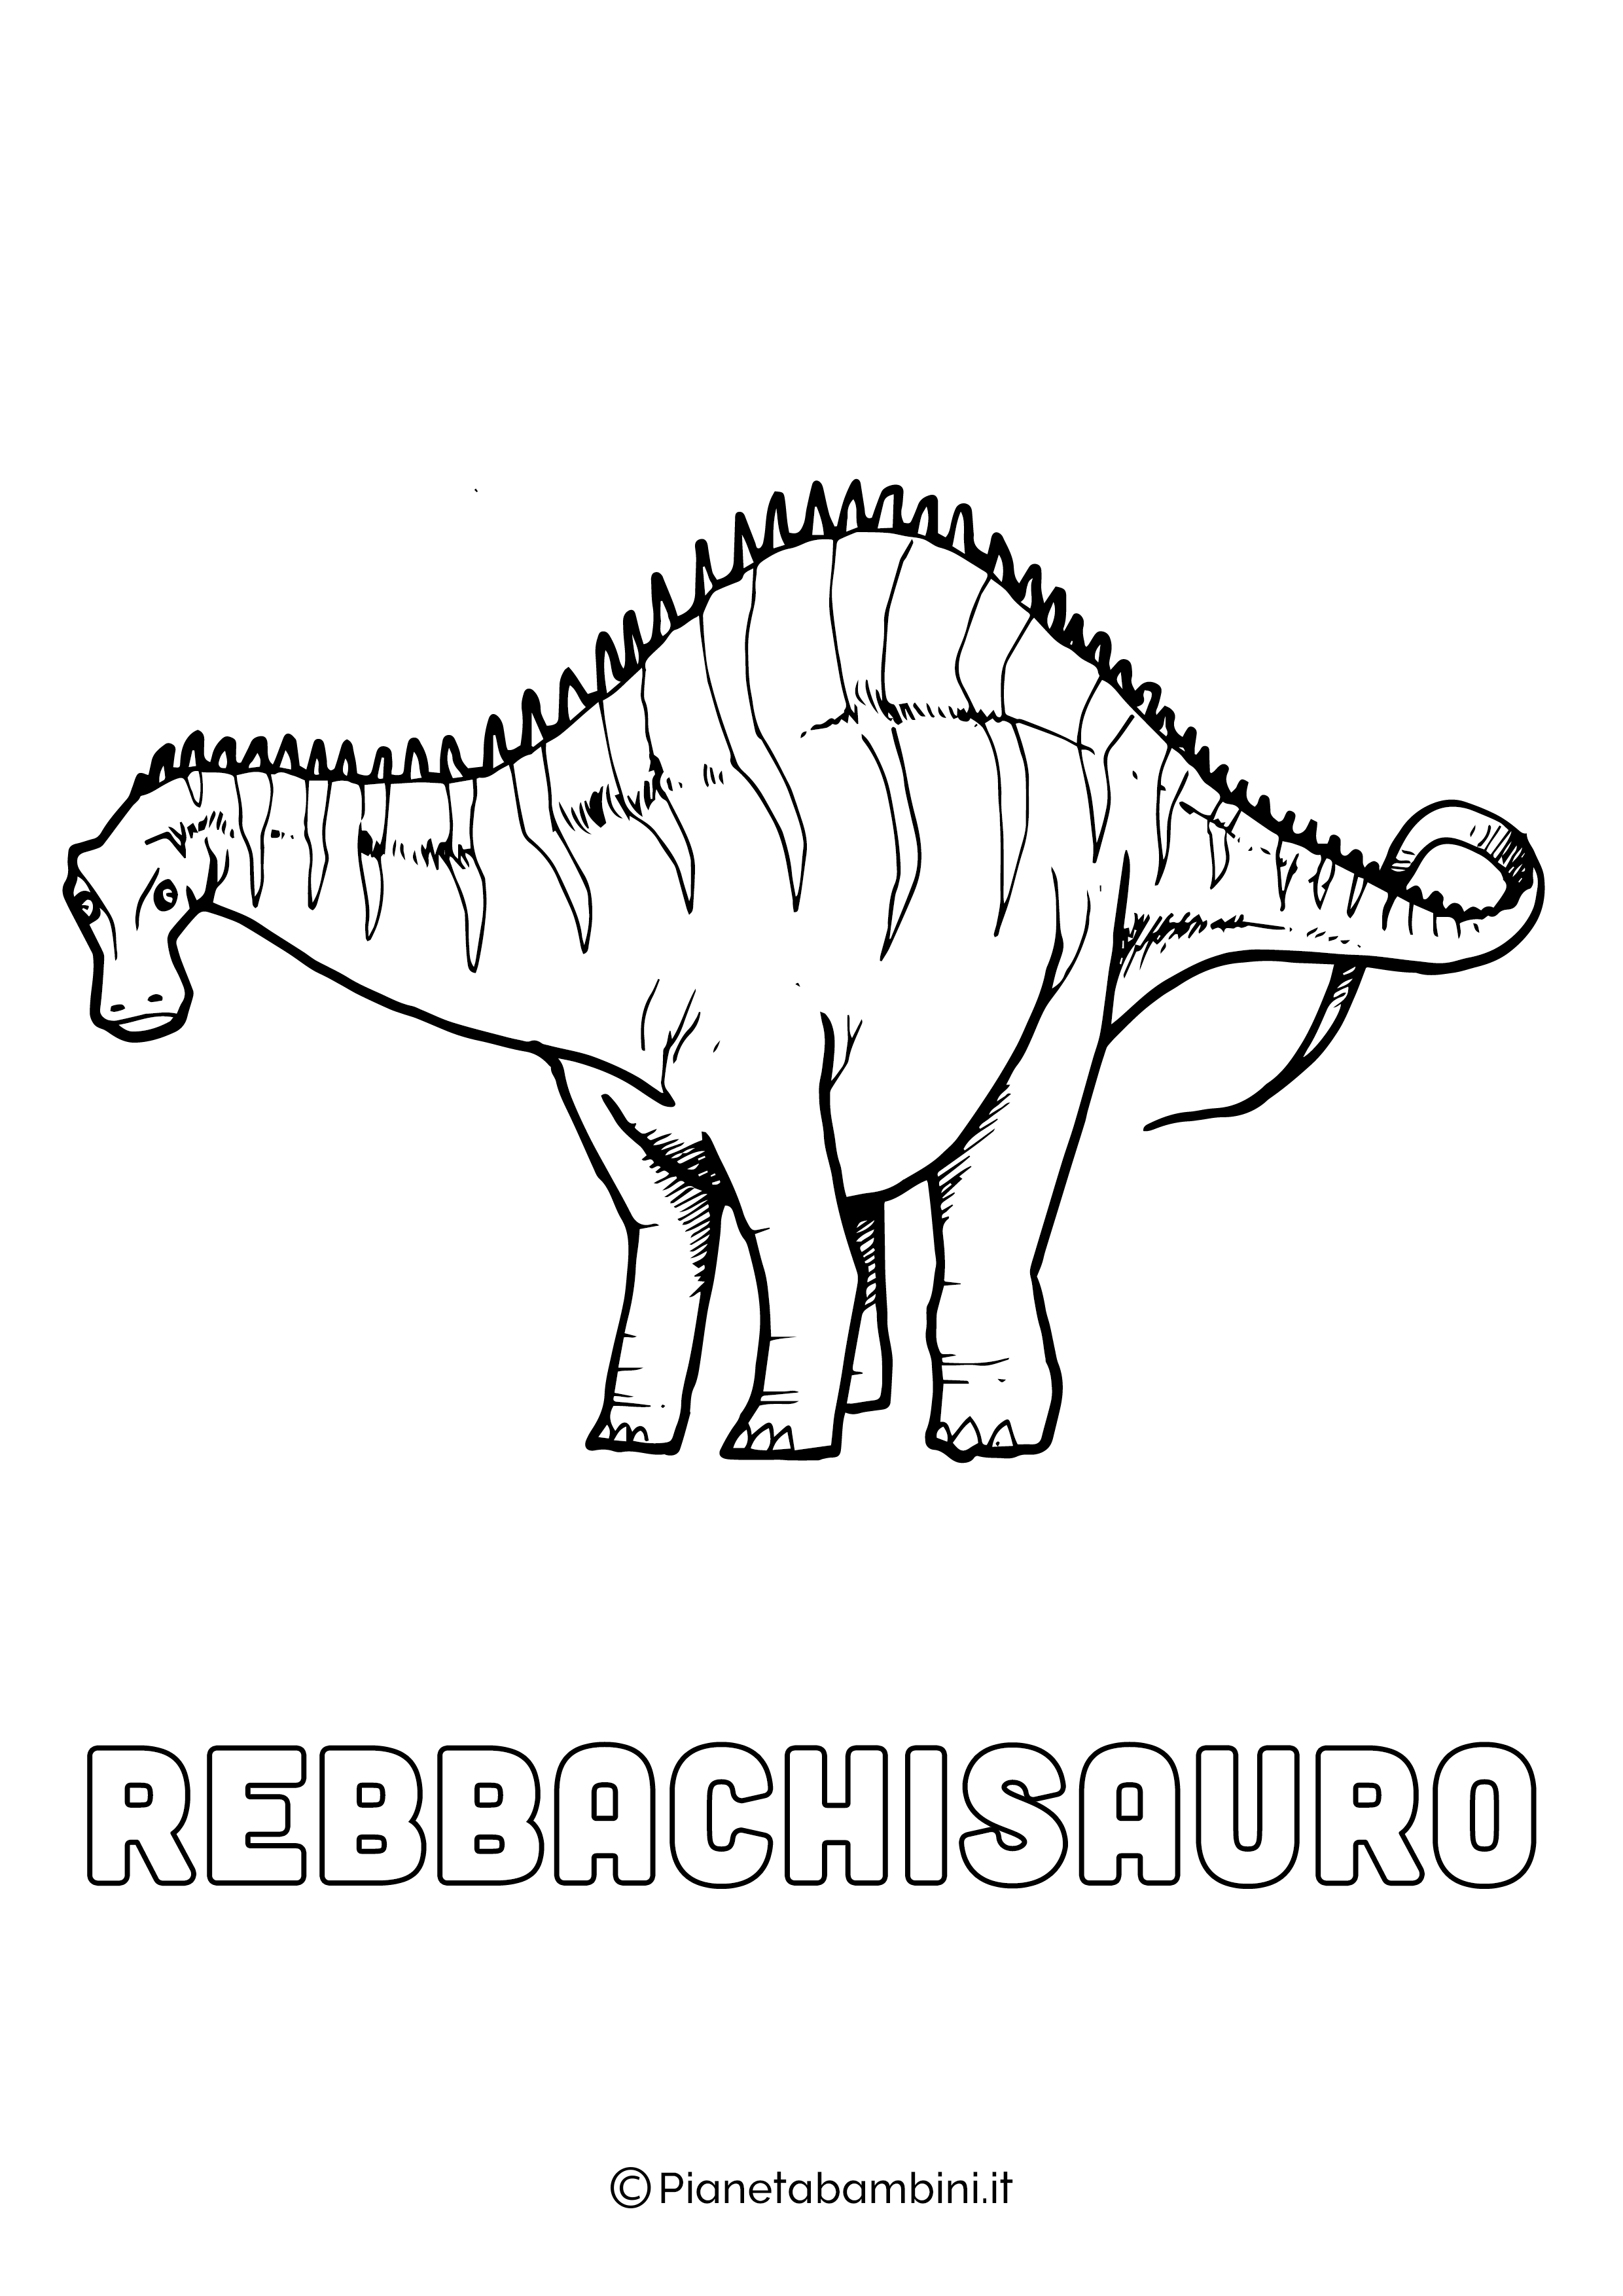 Dinosauro Rebbachisauro da colorare